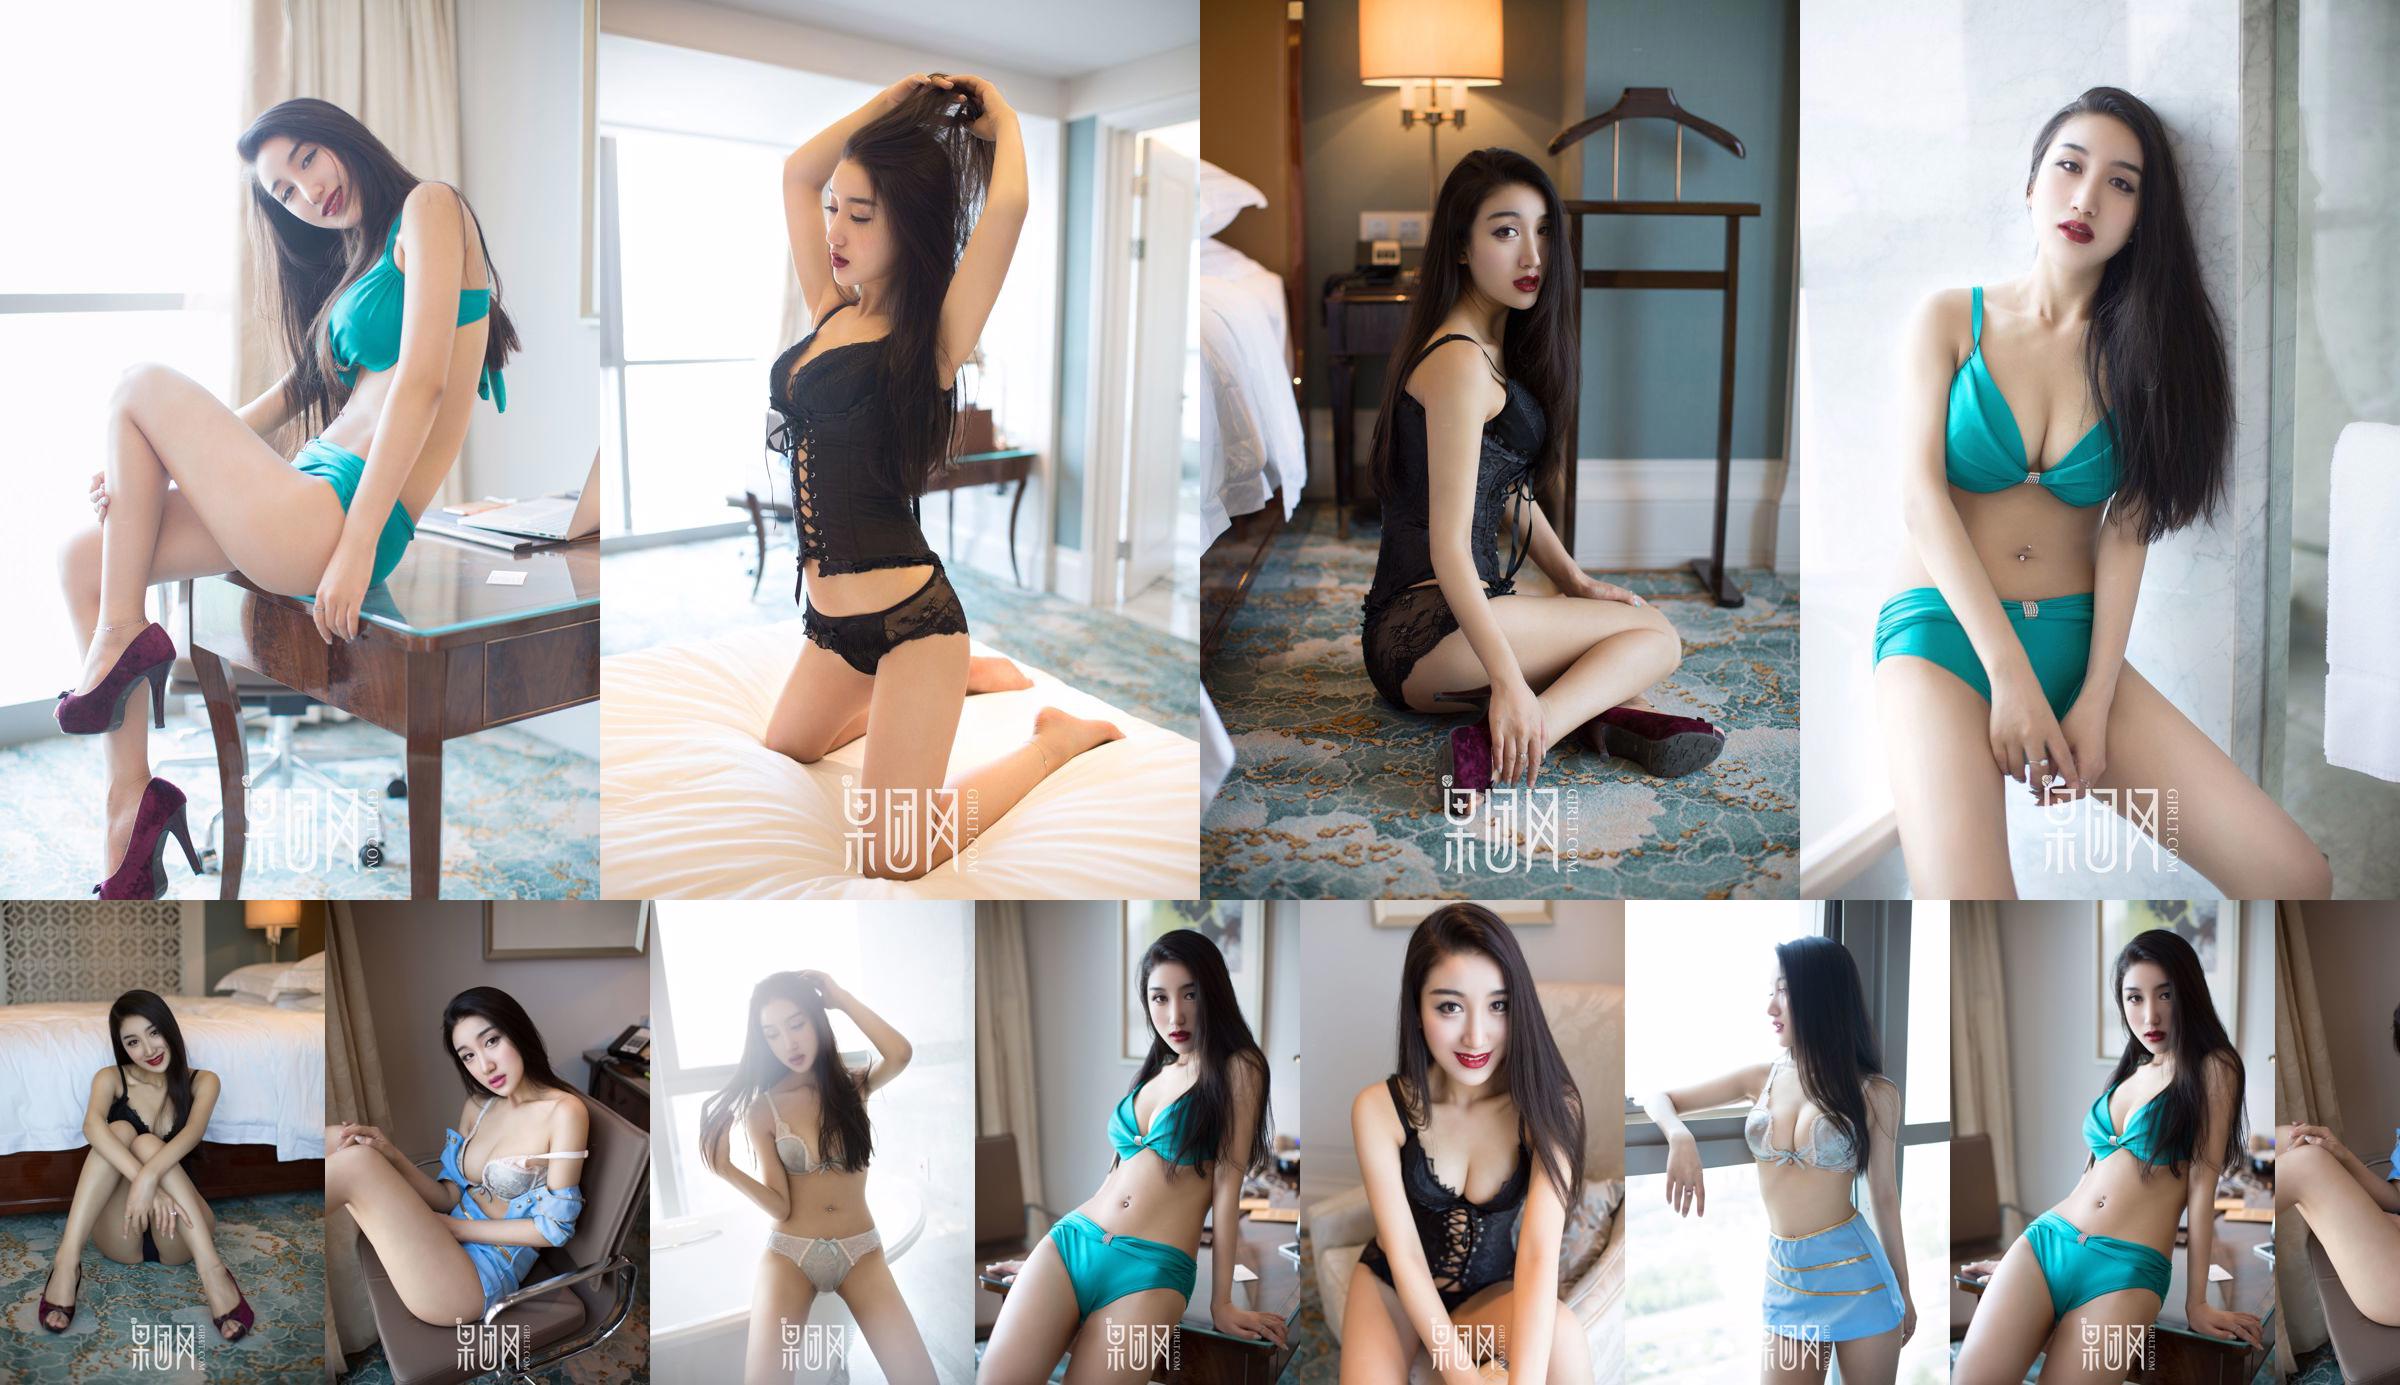 Wang Zheng "Vent chaud sexy" [Girlt] No.050 No.6eca2a Page 5